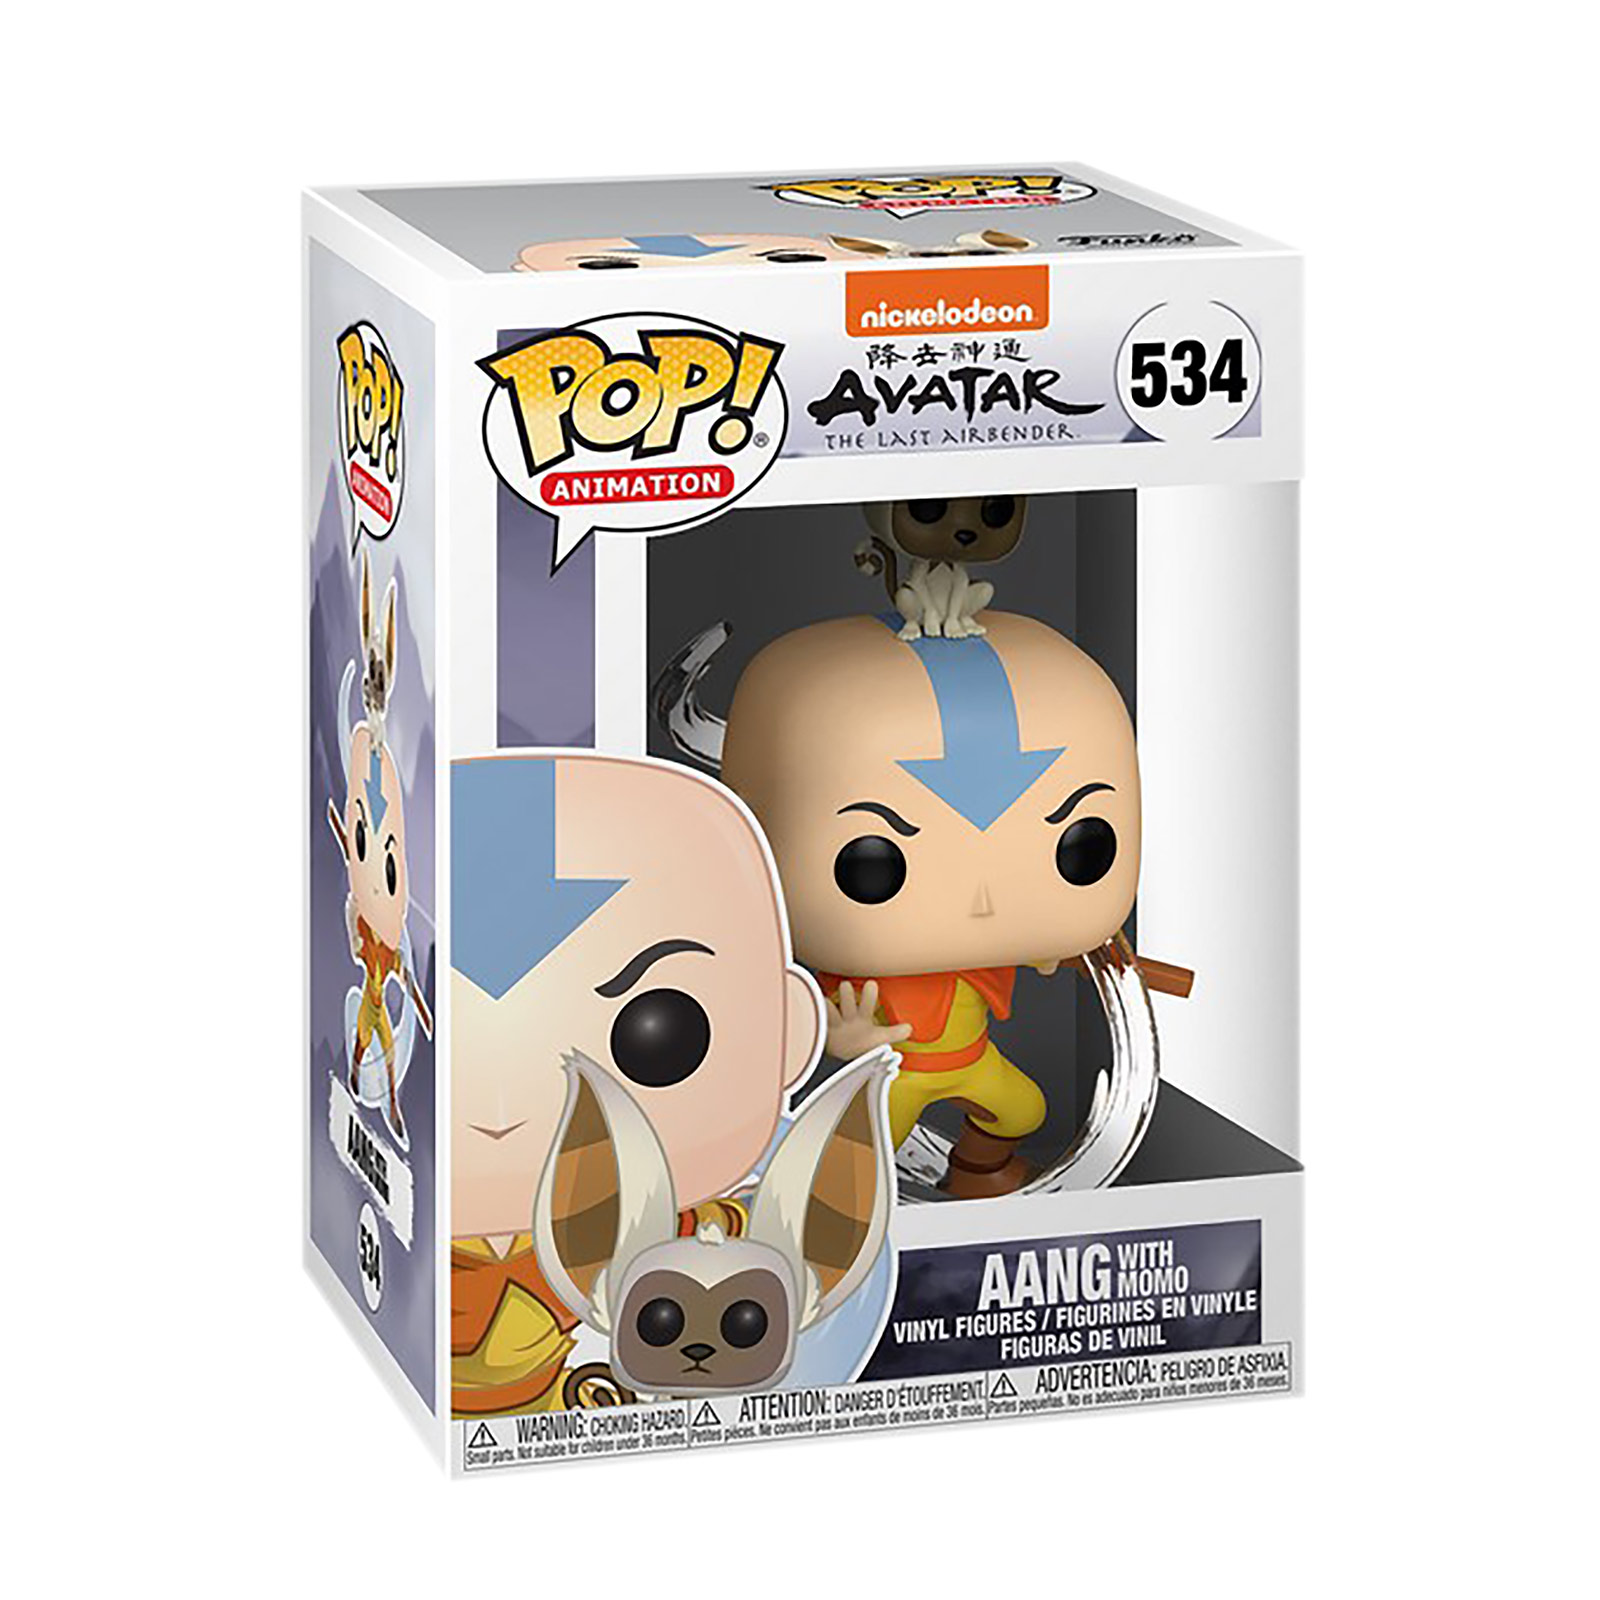 Avatar The Last Airbender - Aang mit Momo Funko Pop Figur